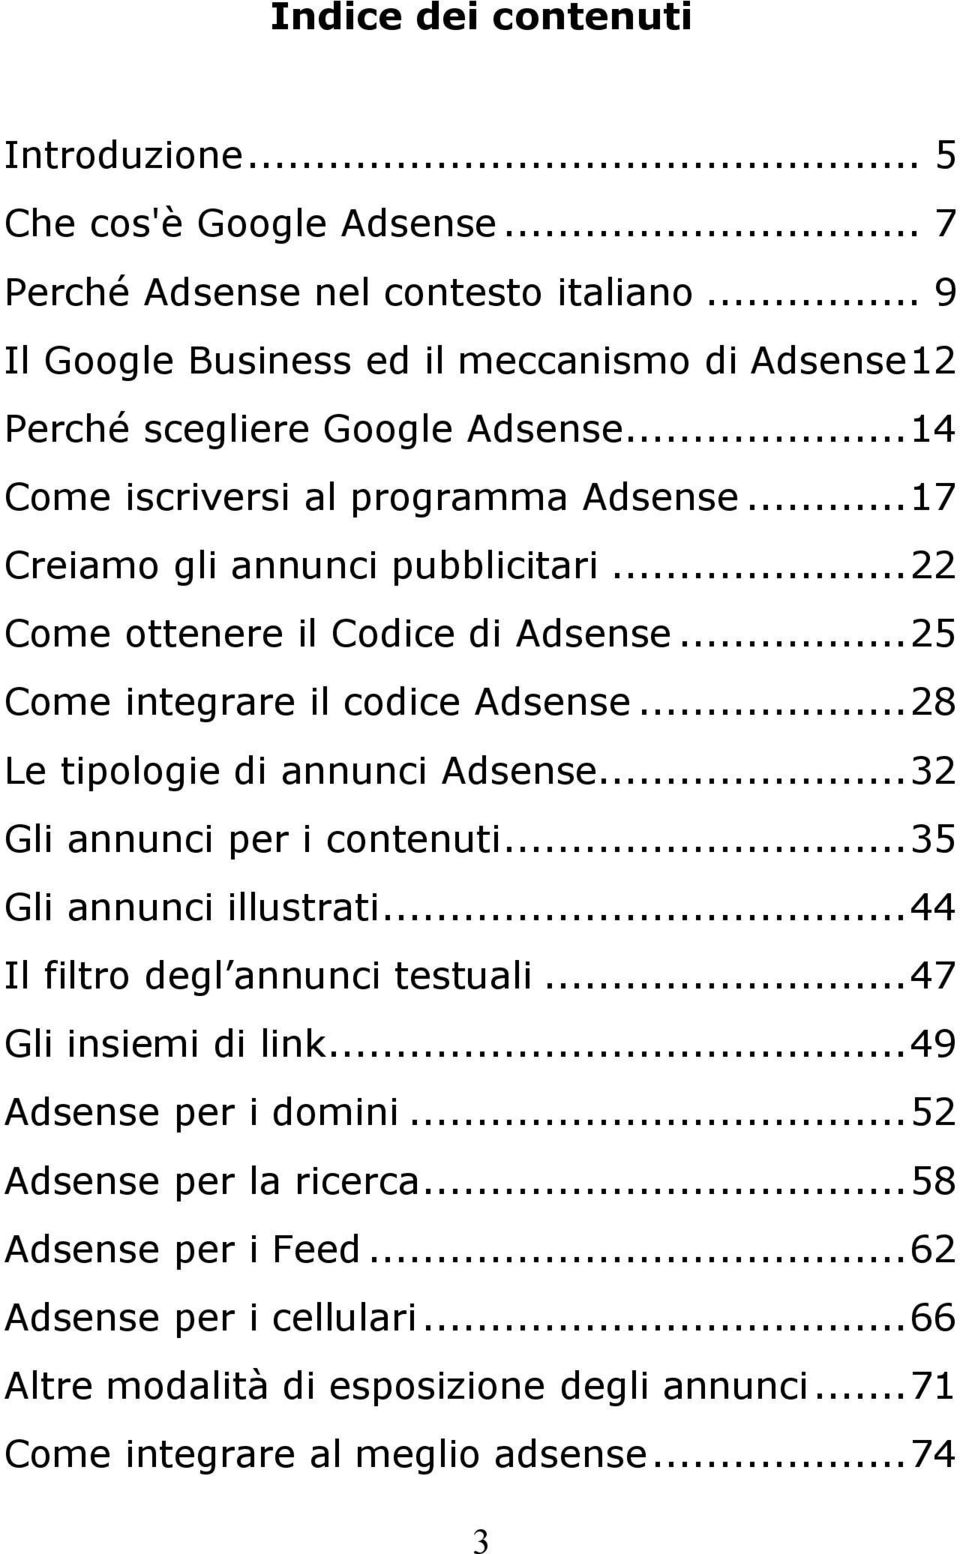 ..22 Come ottenere il Codice di Adsense...25 Come integrare il codice Adsense...28 Le tipologie di annunci Adsense...32 Gli annunci per i contenuti...35 Gli annunci illustrati.